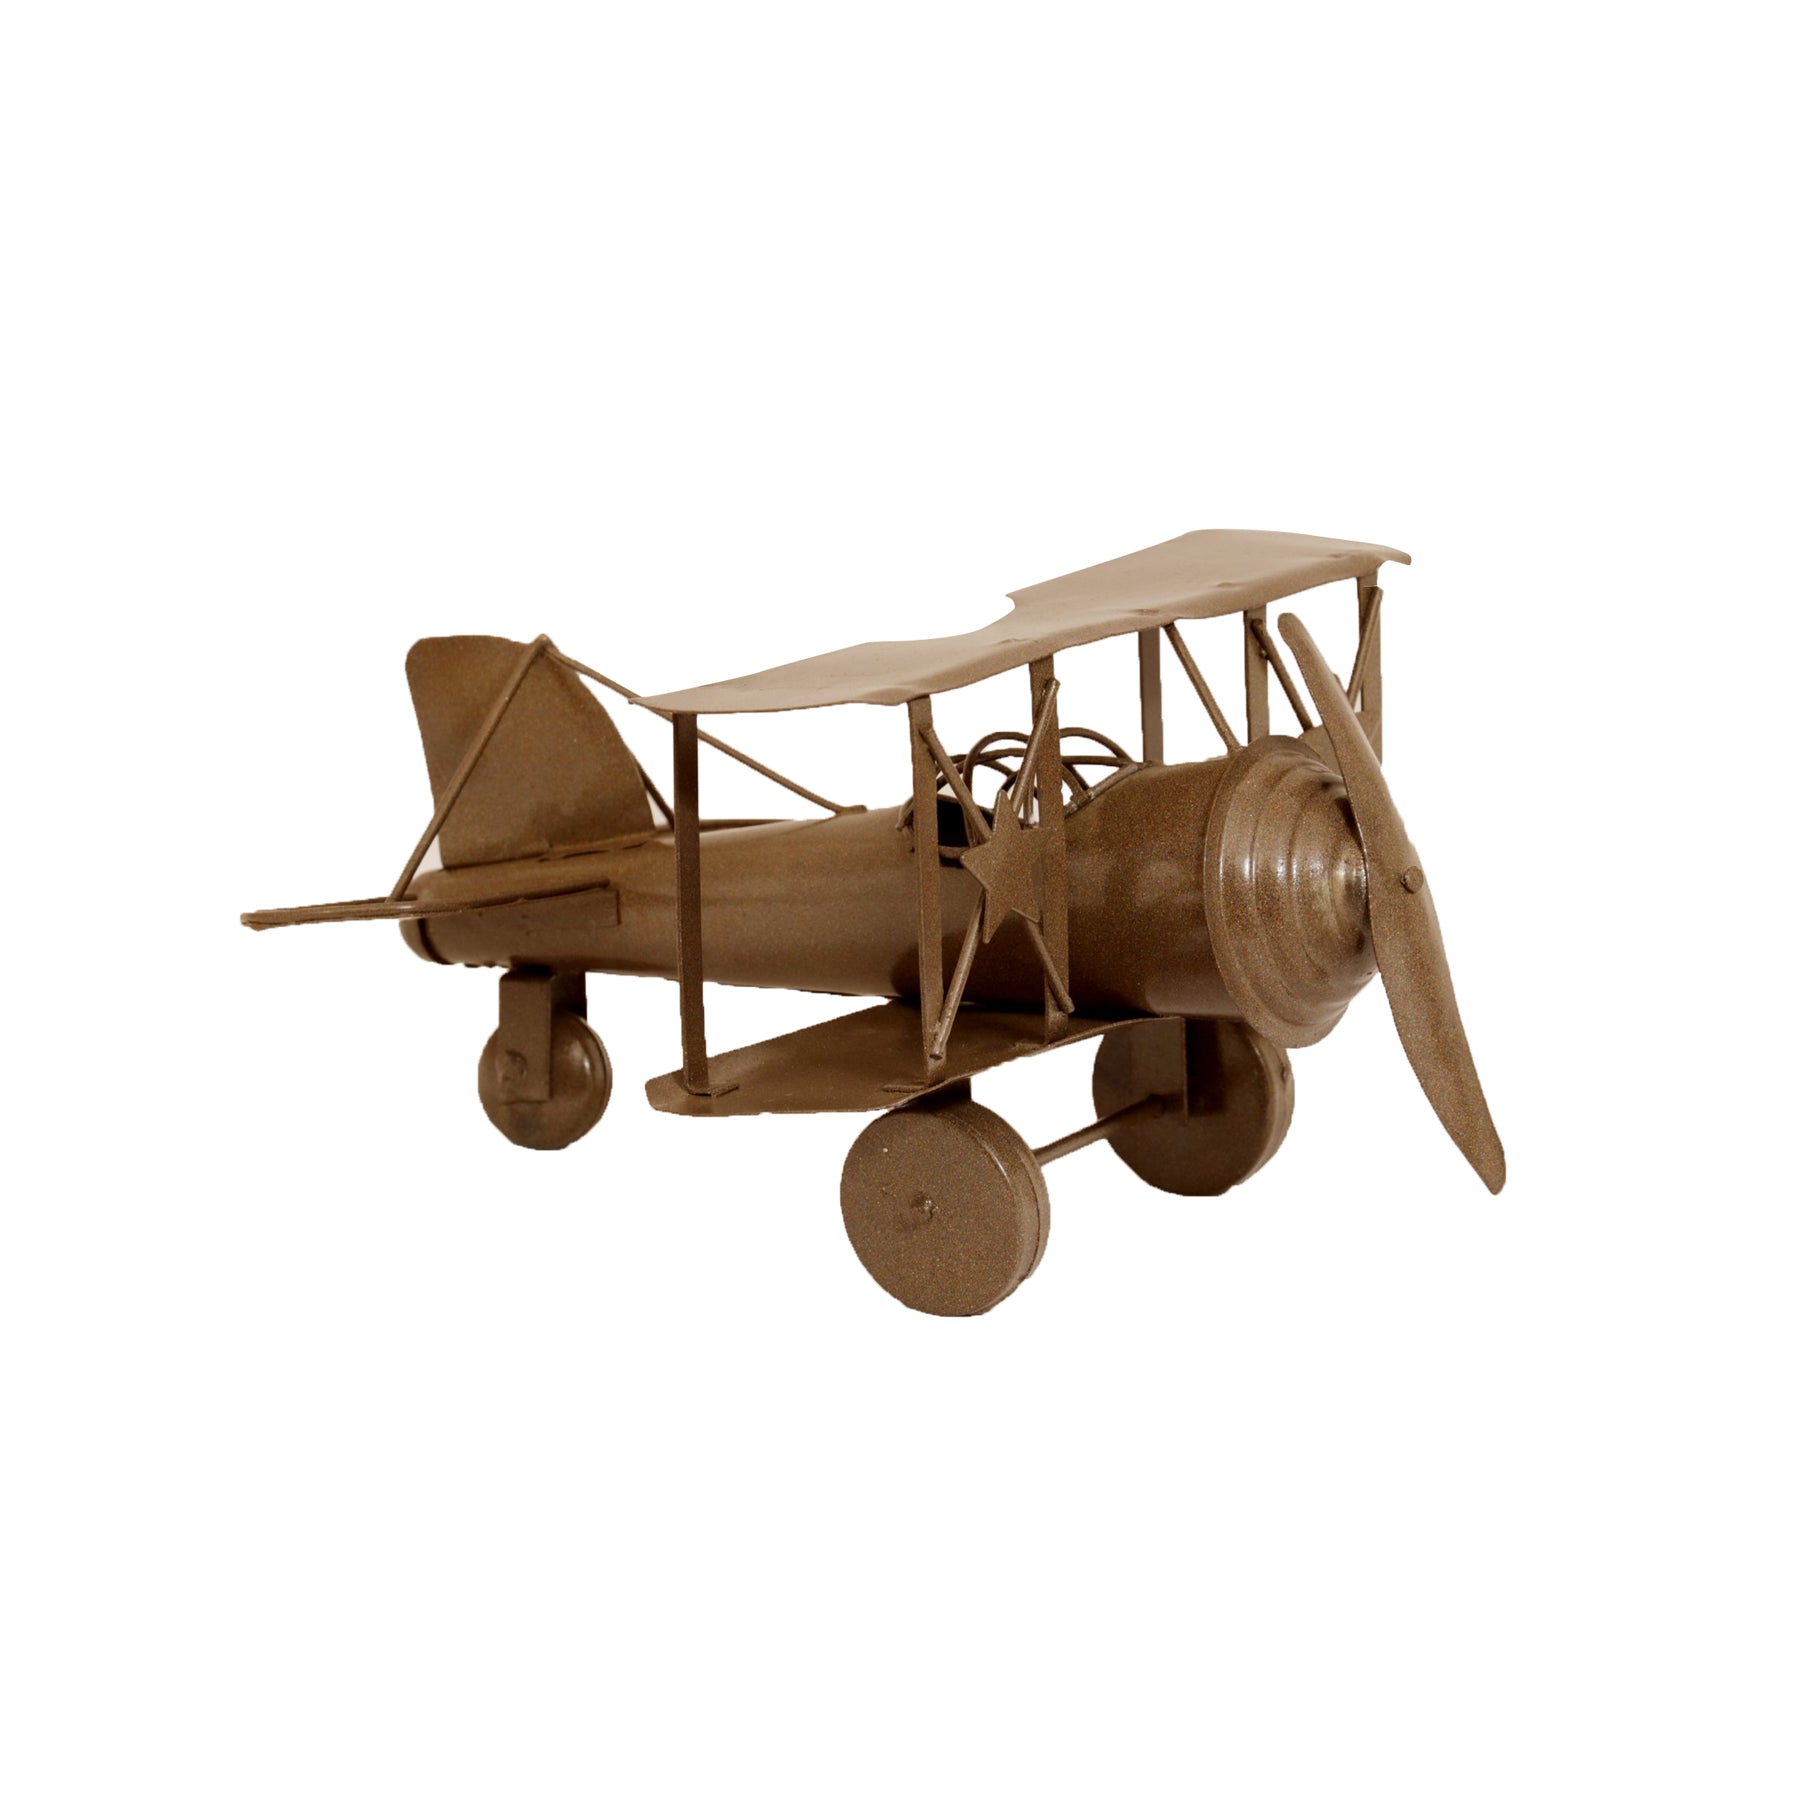 Vintage Brown Painted Plane Vehicle figurine